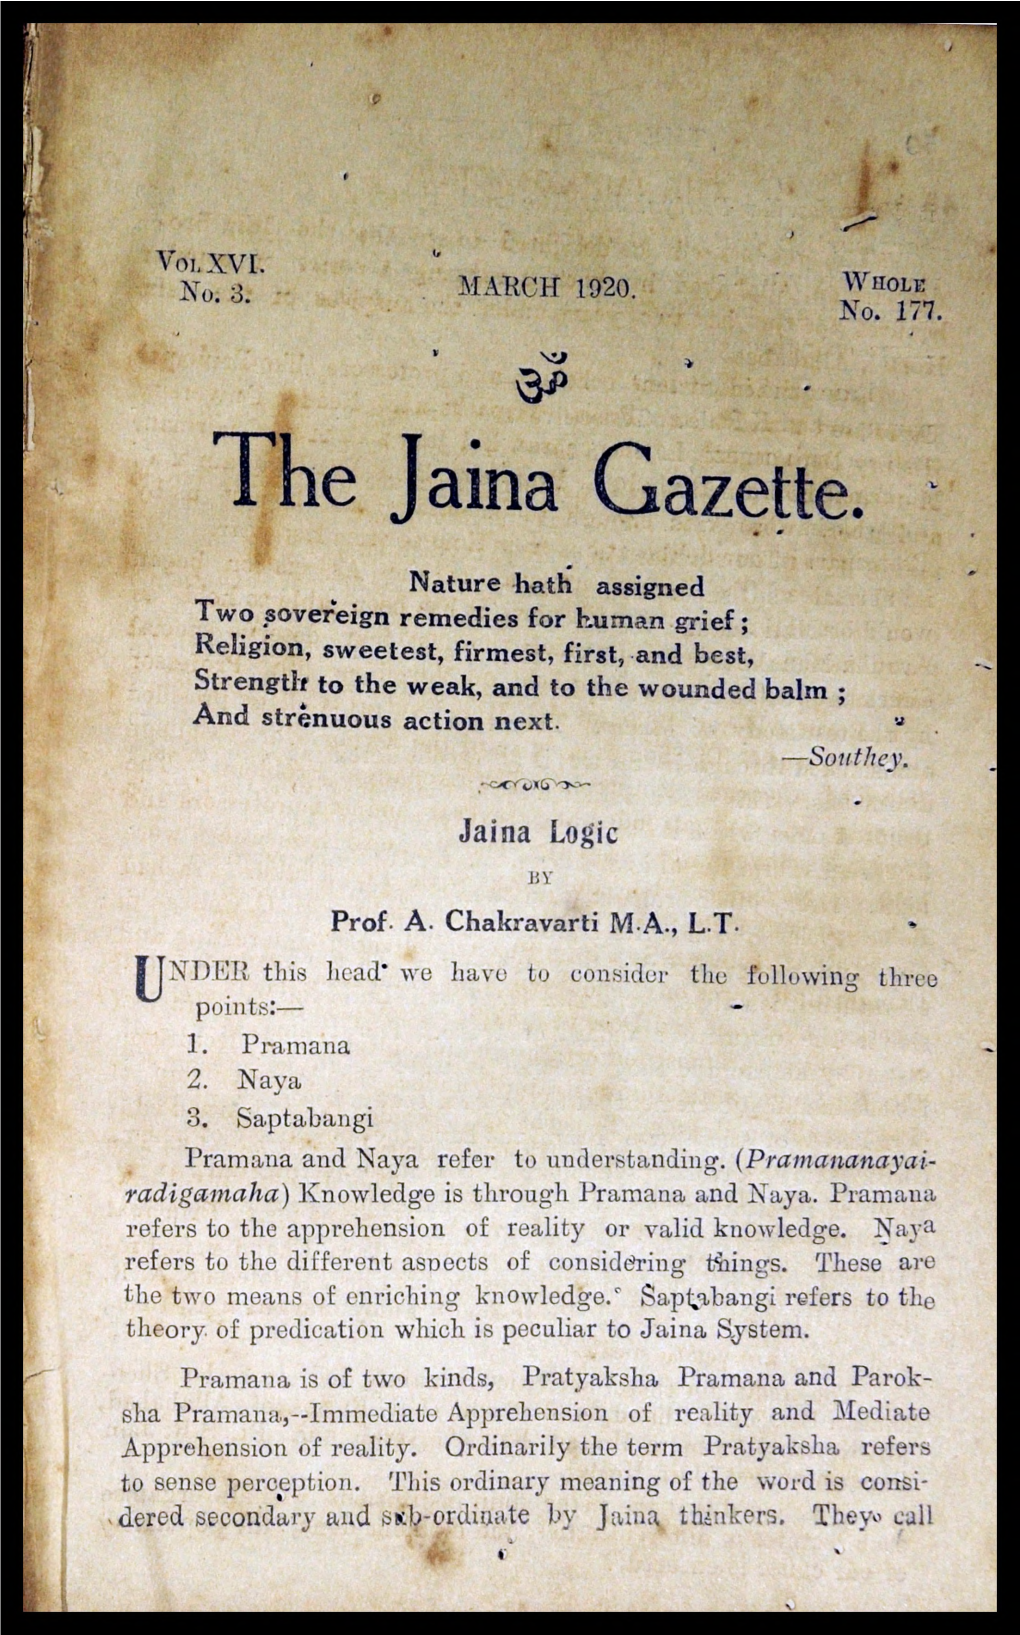 The Jama Gazette